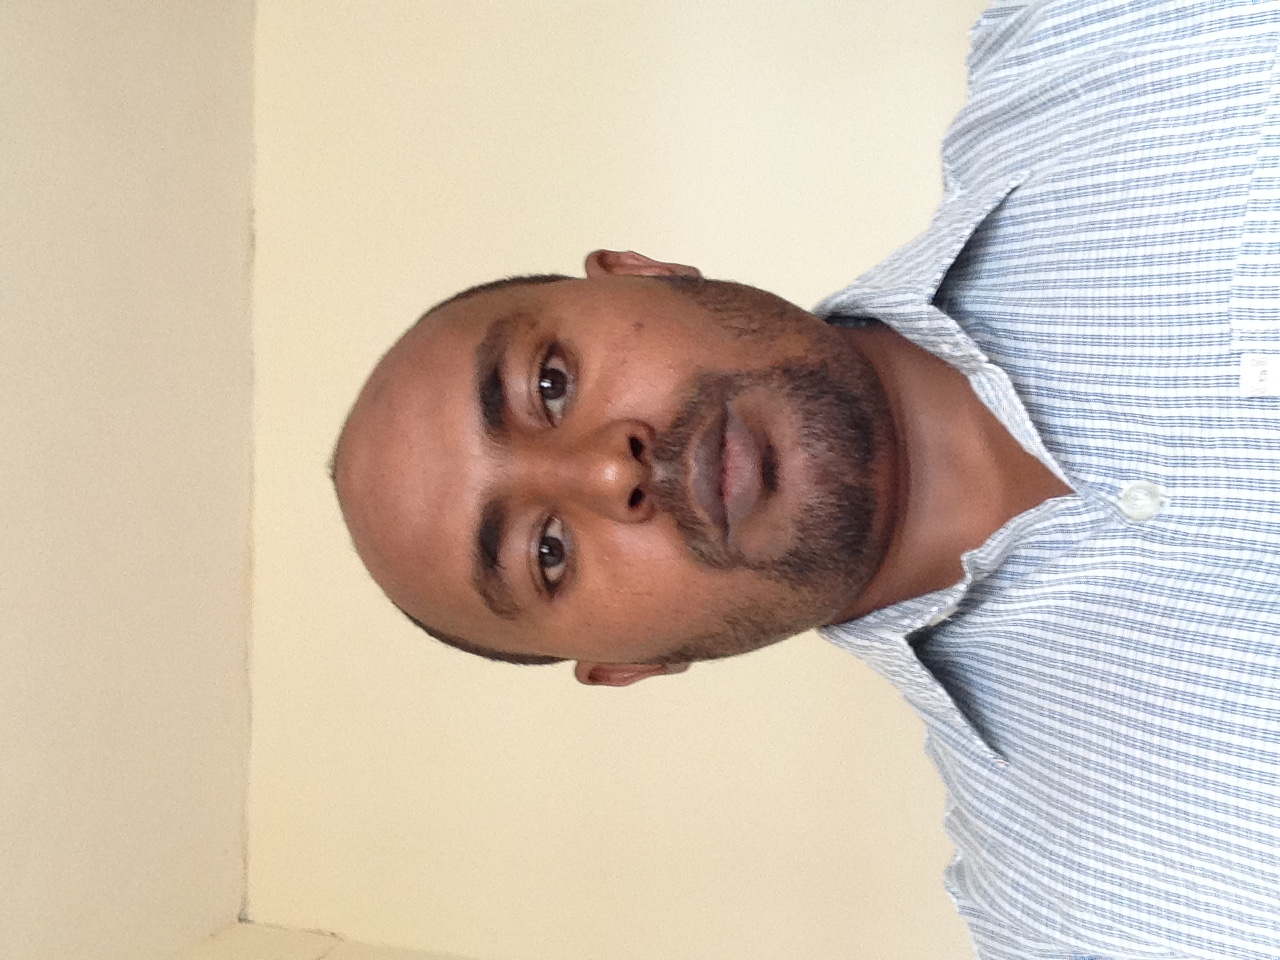 Dr Abdu Mohammed Seid